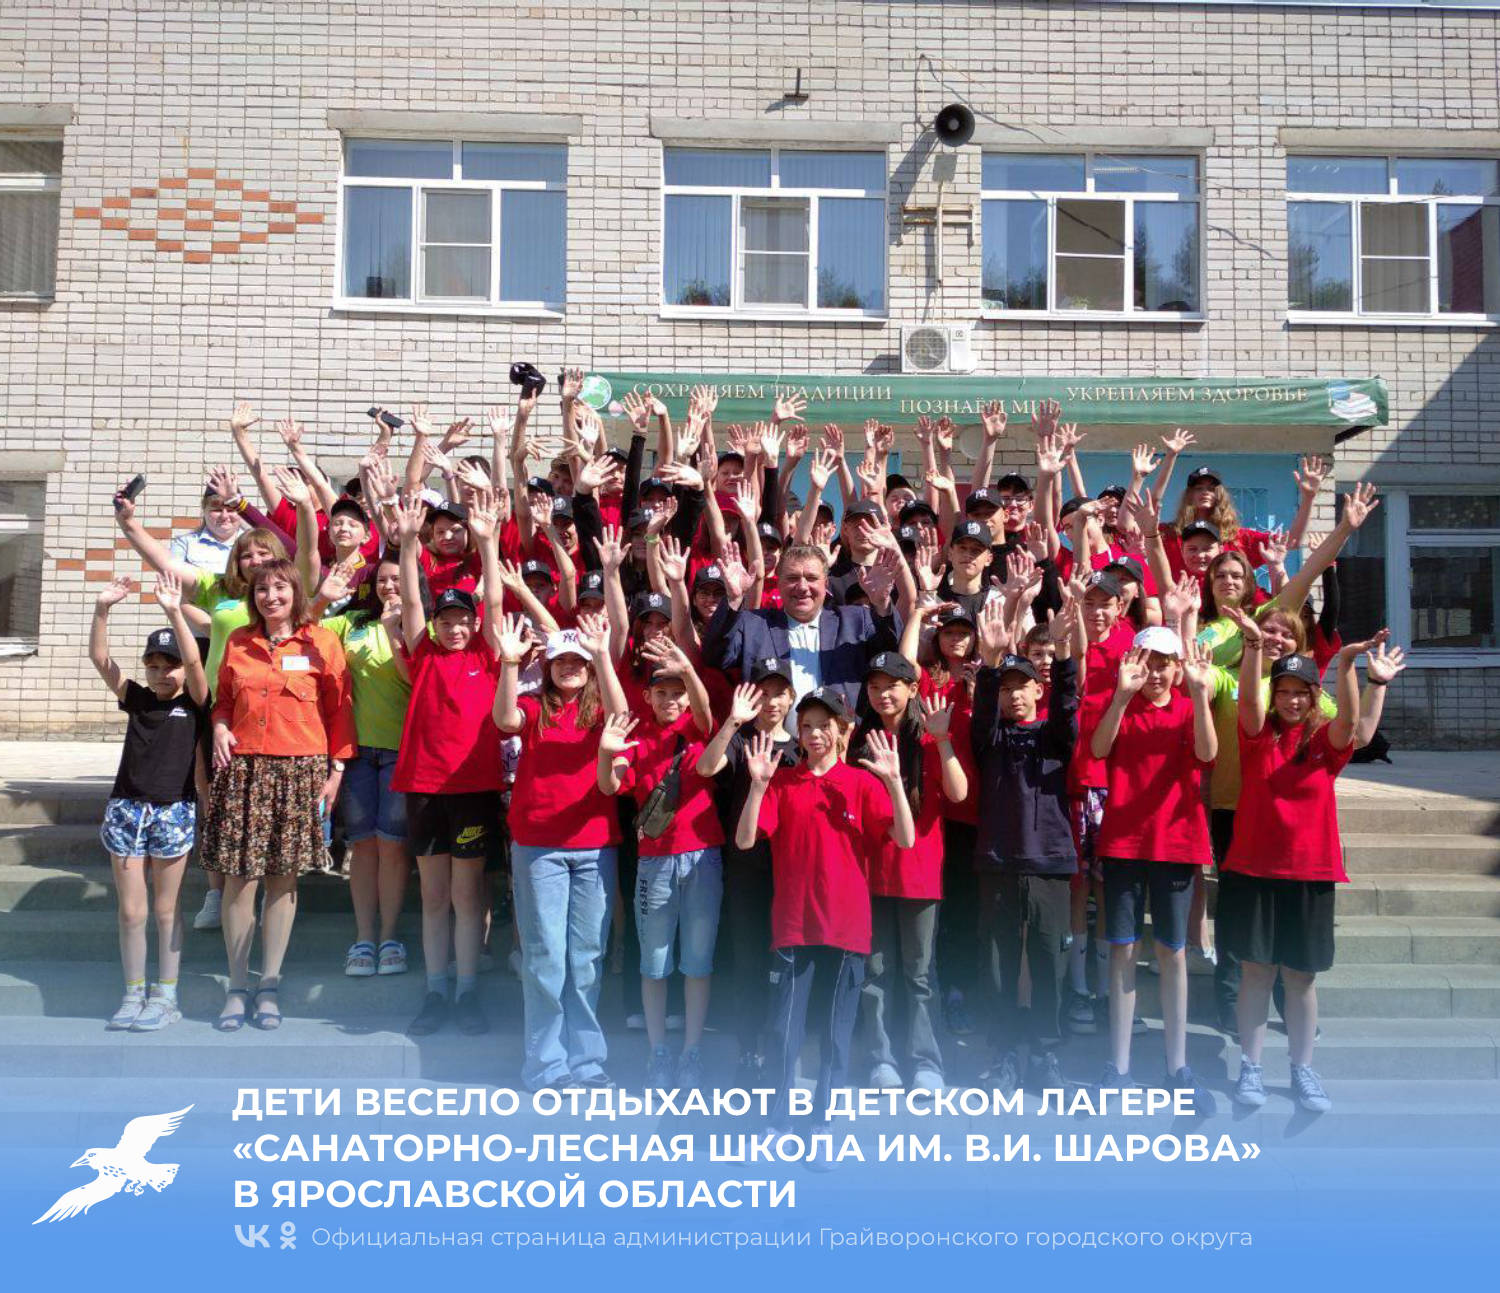 Дети из Грайворонского округа весело отдыхают в детском лагере «Санаторно-лесная школа им. В.И. Шарова» в Ярославской области.